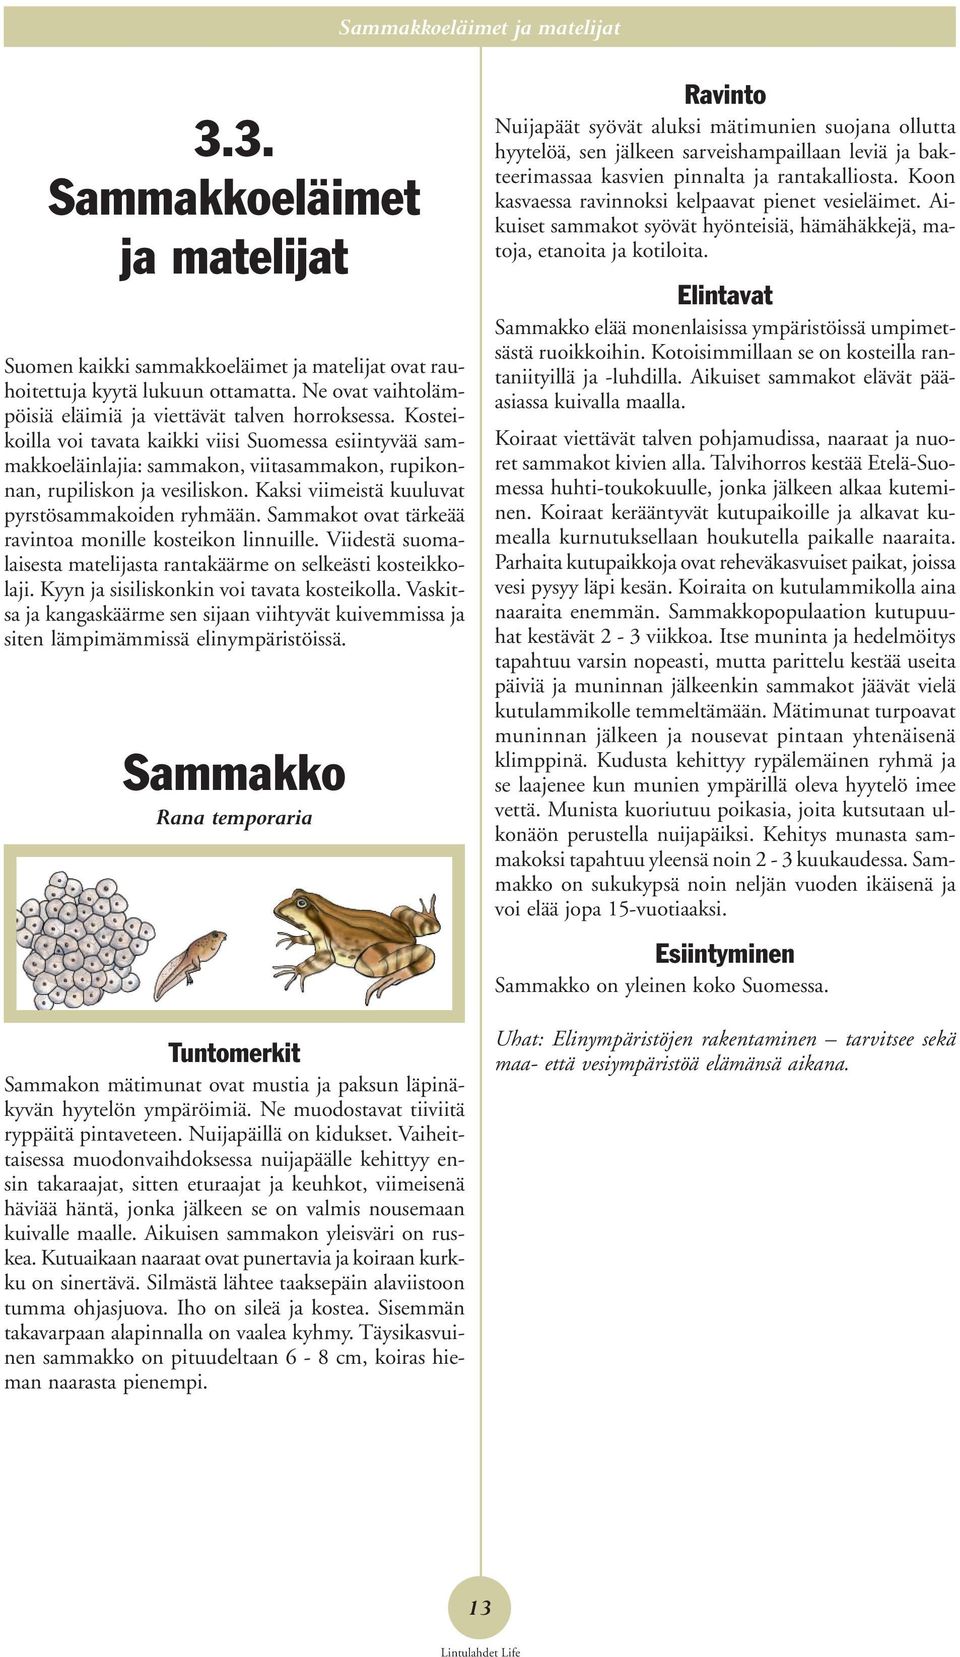 Kosteikoilla voi tavata kaikki viisi Suomessa esiintyvää sammakkoeläinlajia: sammakon, viitasammakon, rupikonnan, rupiliskon ja vesiliskon. Kaksi viimeistä kuuluvat pyrstösammakoiden ryhmään.